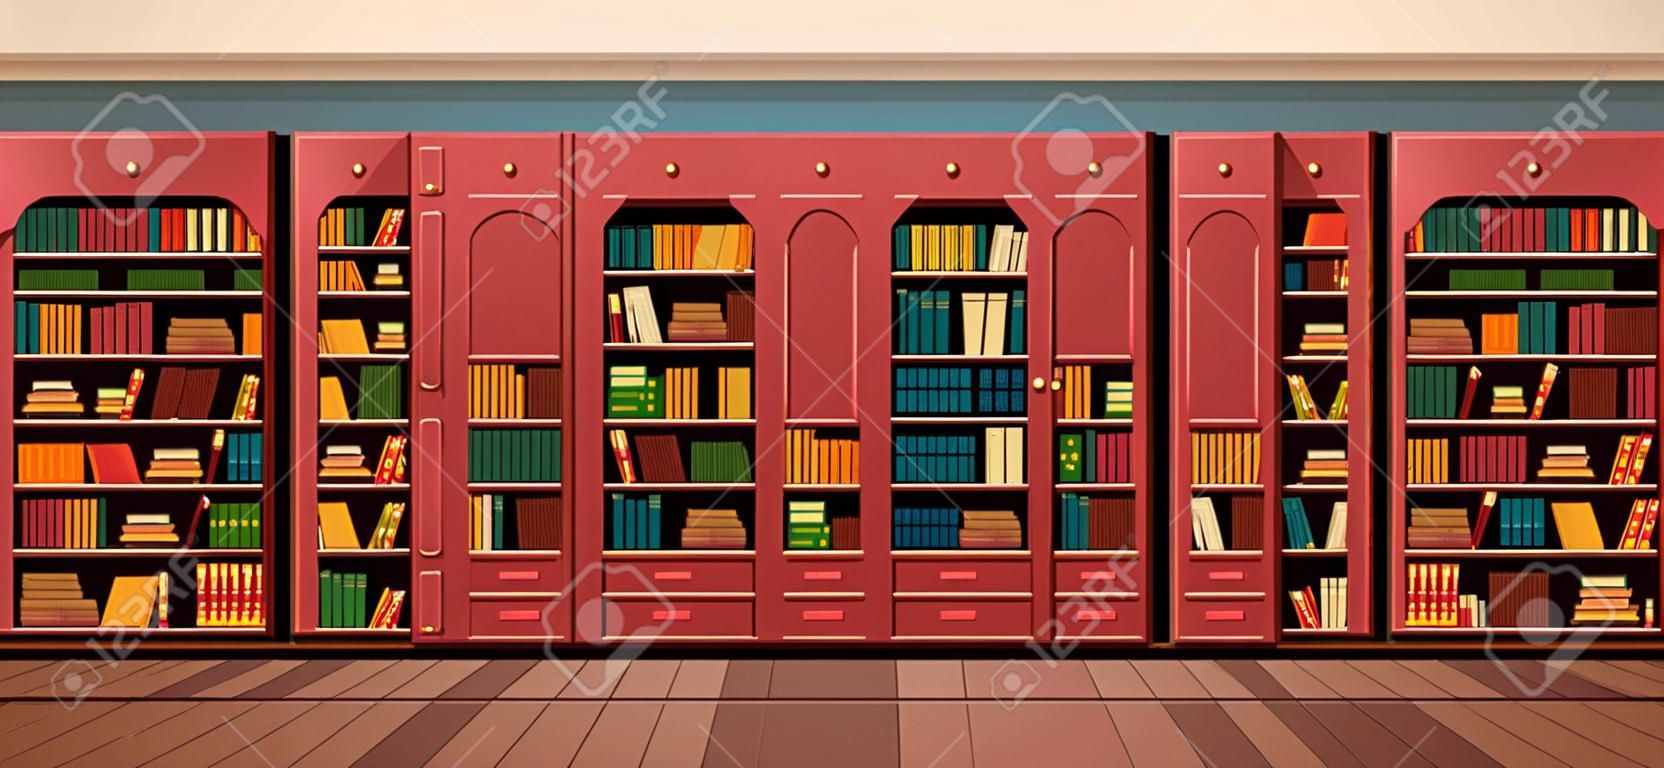 Векторная иллюстрация библиотечные полки книжные полки библиотеки плоский стиль.